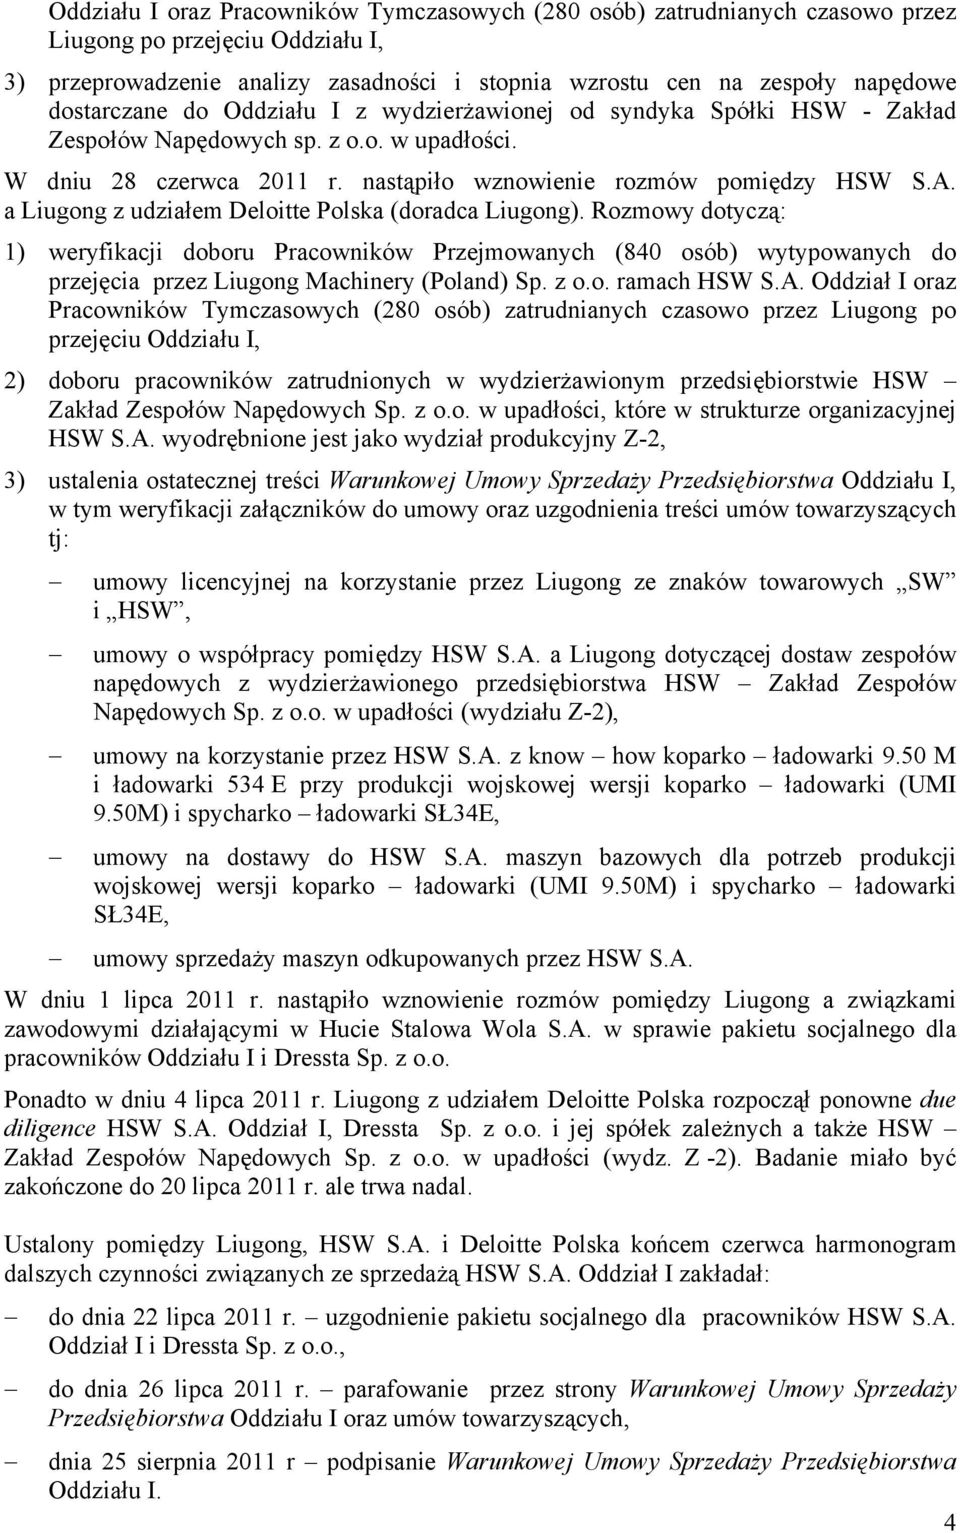 a Liugong z udziałem Deloitte Polska (doradca Liugong). Rozmowy dotyczą: 1) weryfikacji doboru Pracowników Przejmowanych (840 osób) wytypowanych do przejęcia przez Liugong Machinery (Poland) Sp. z o.